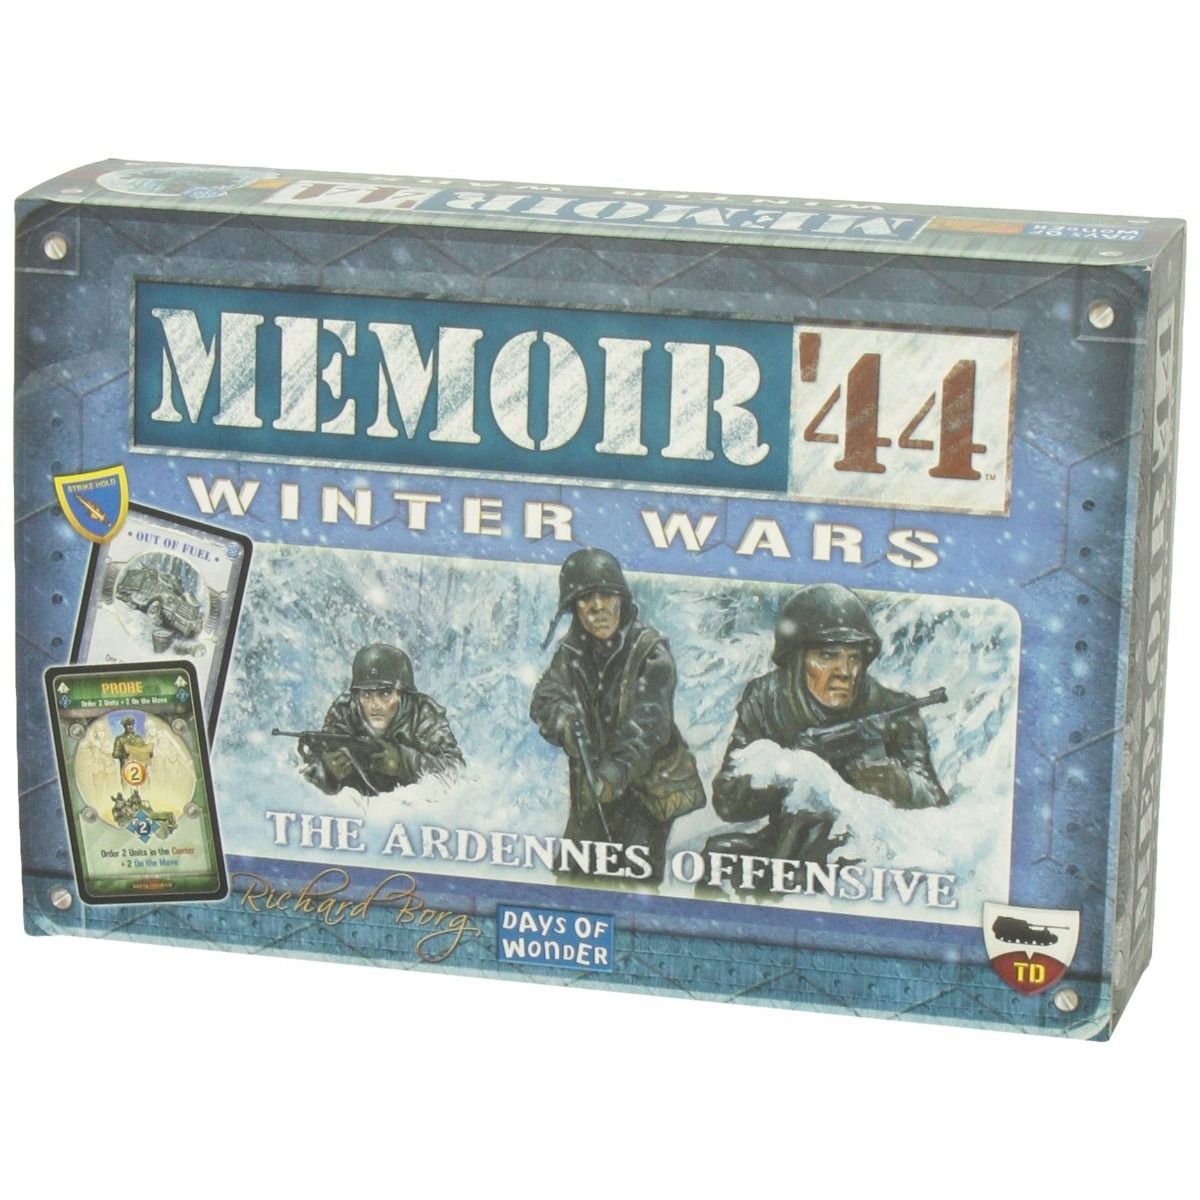 Memoir 44 Winter Wars